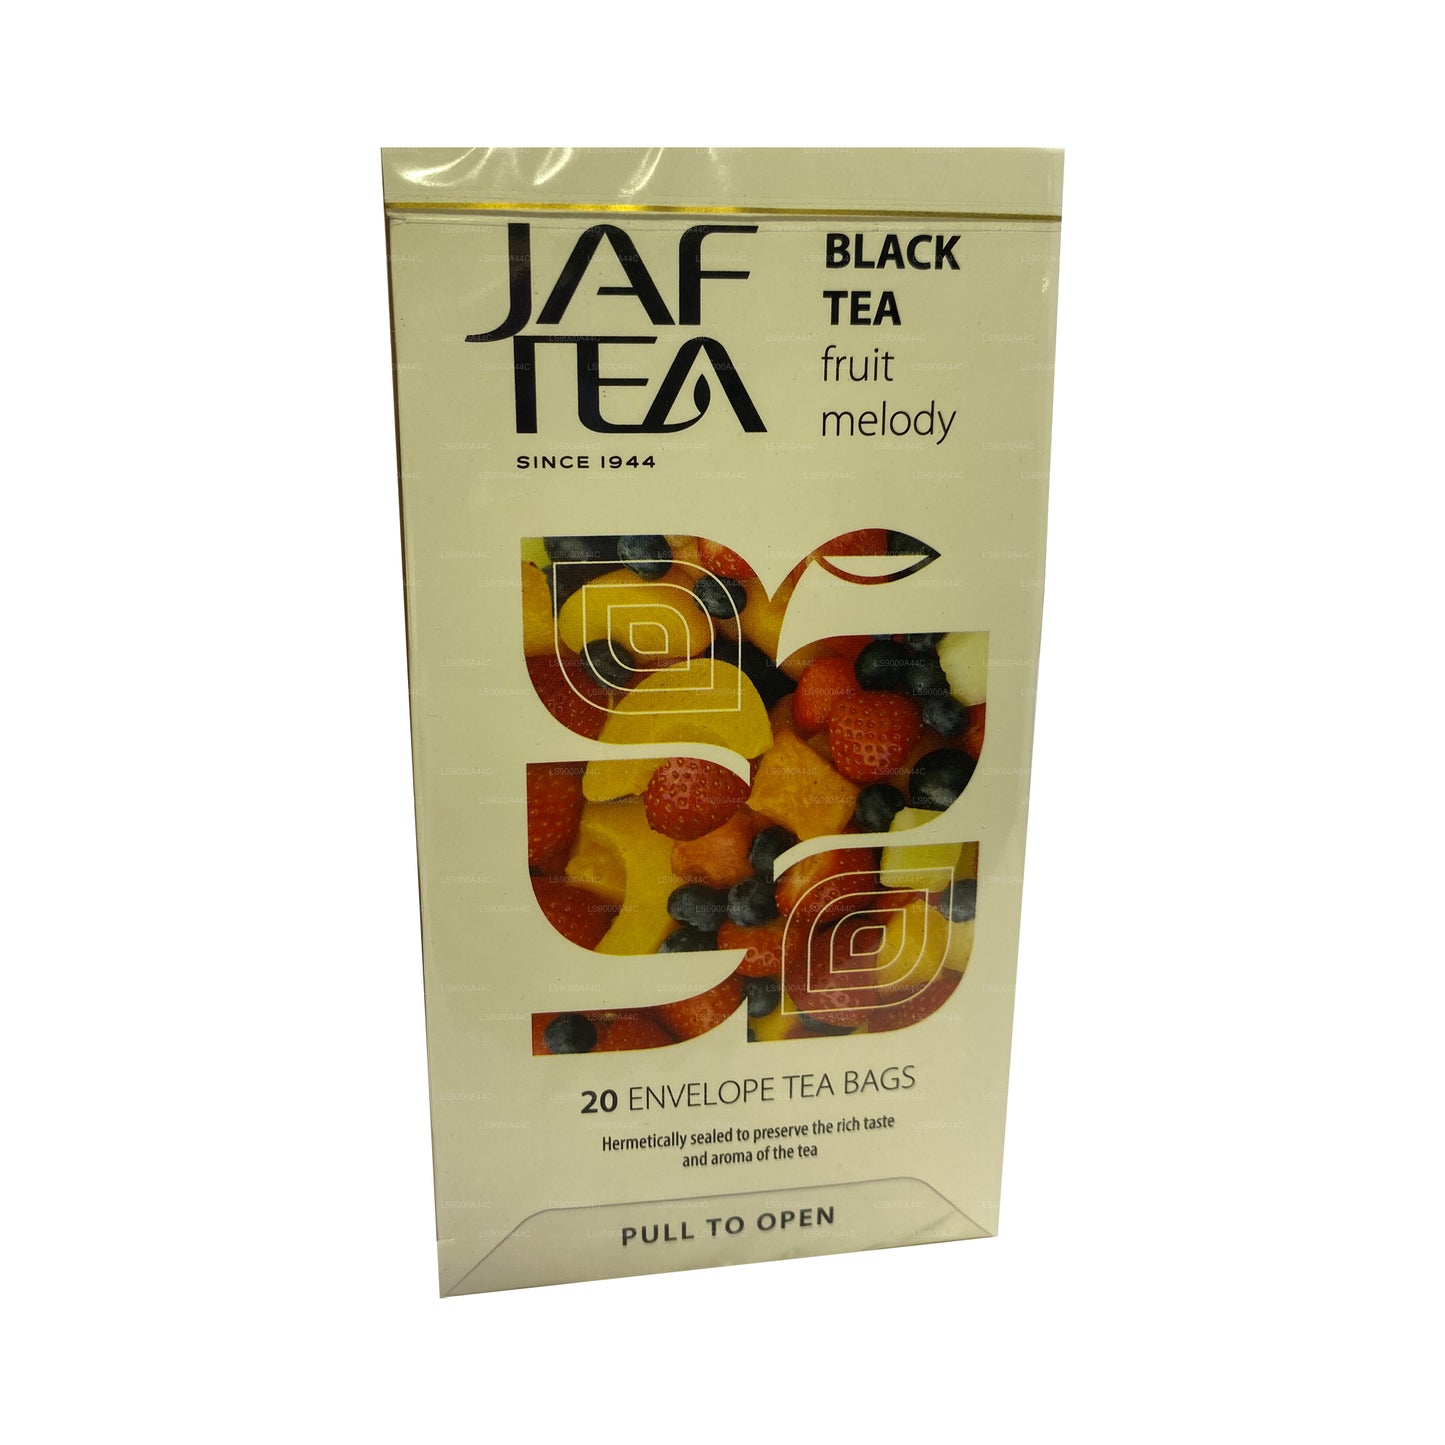 Jaf Tea Коллекция чистых фруктов Черный чай Фруктовая мелодия (30 г) 20 чайных пакетиков